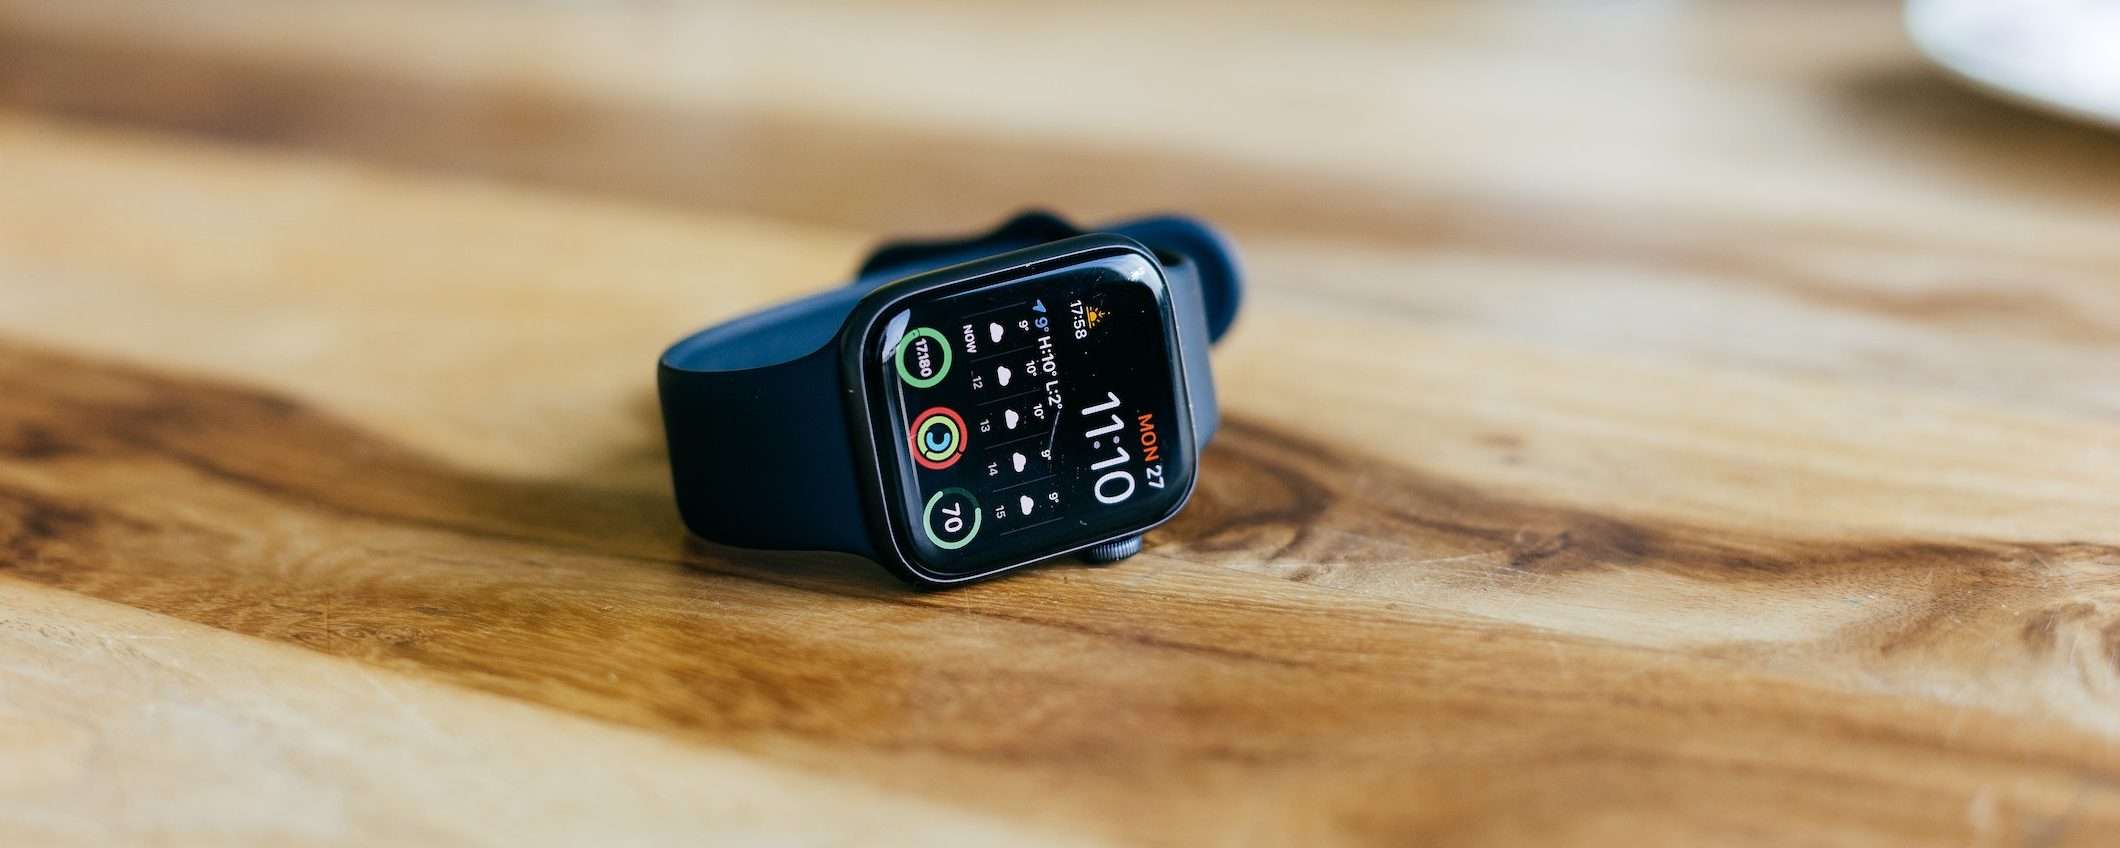 Apple Watch sarebbe potuto essere compatibile con Android